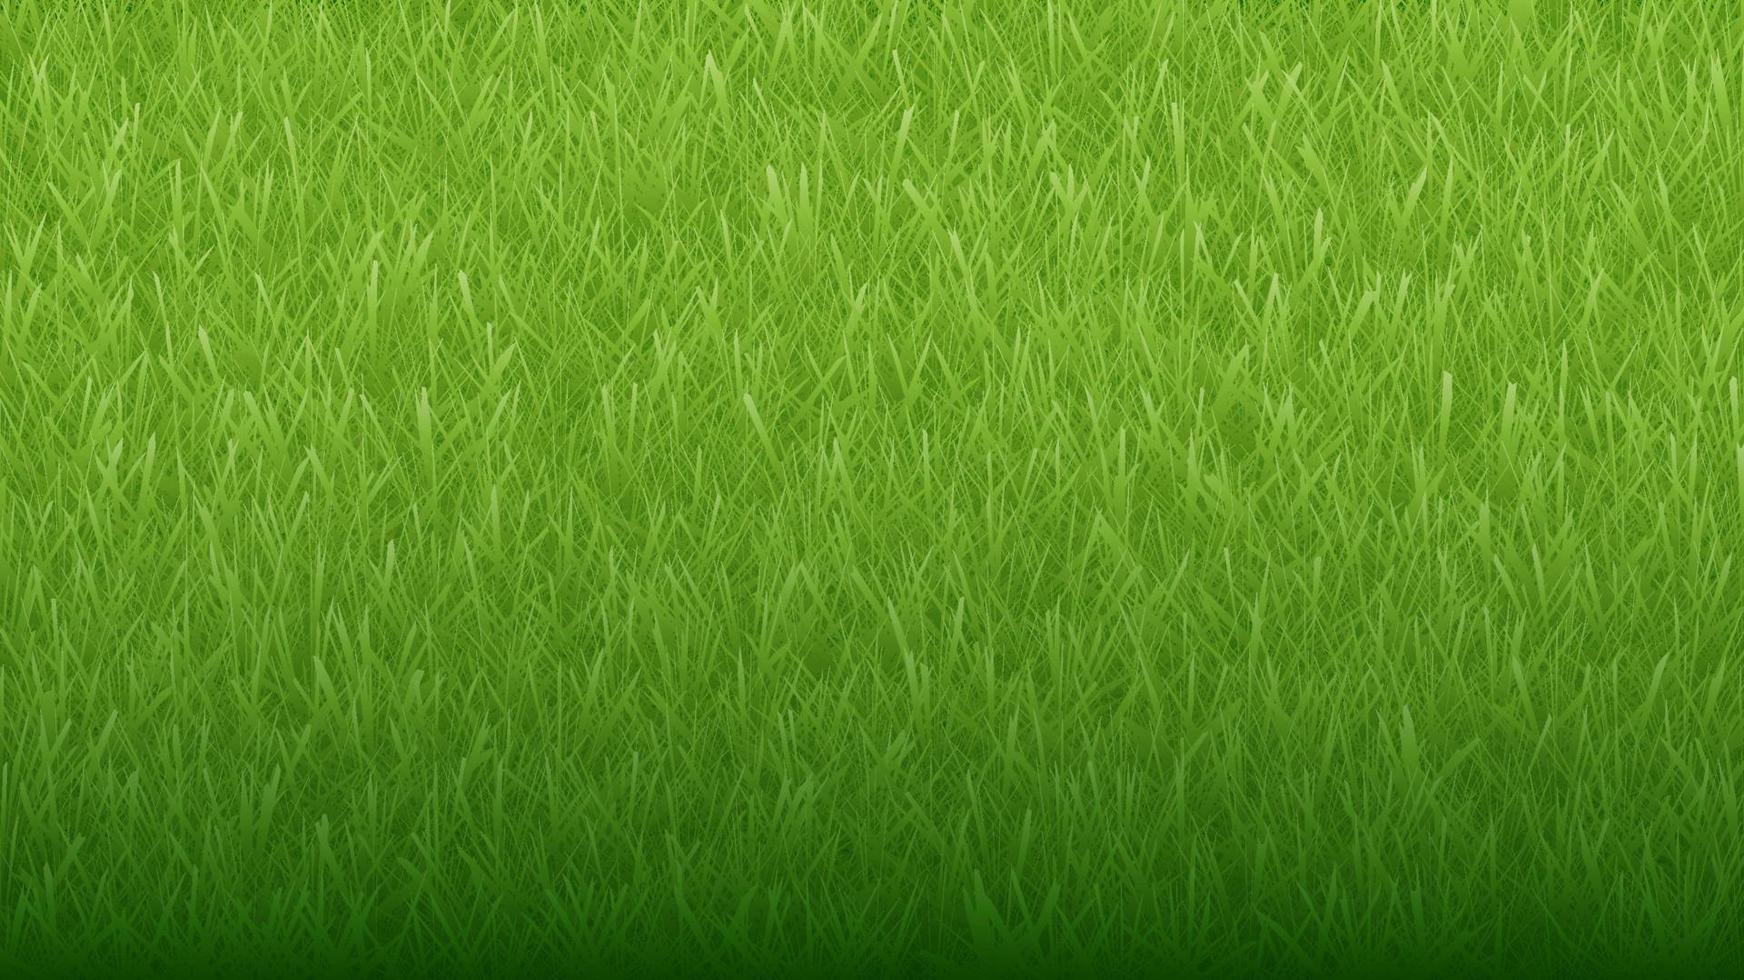 grönt naturligt organiskt gräs bakgrund och textur vektor